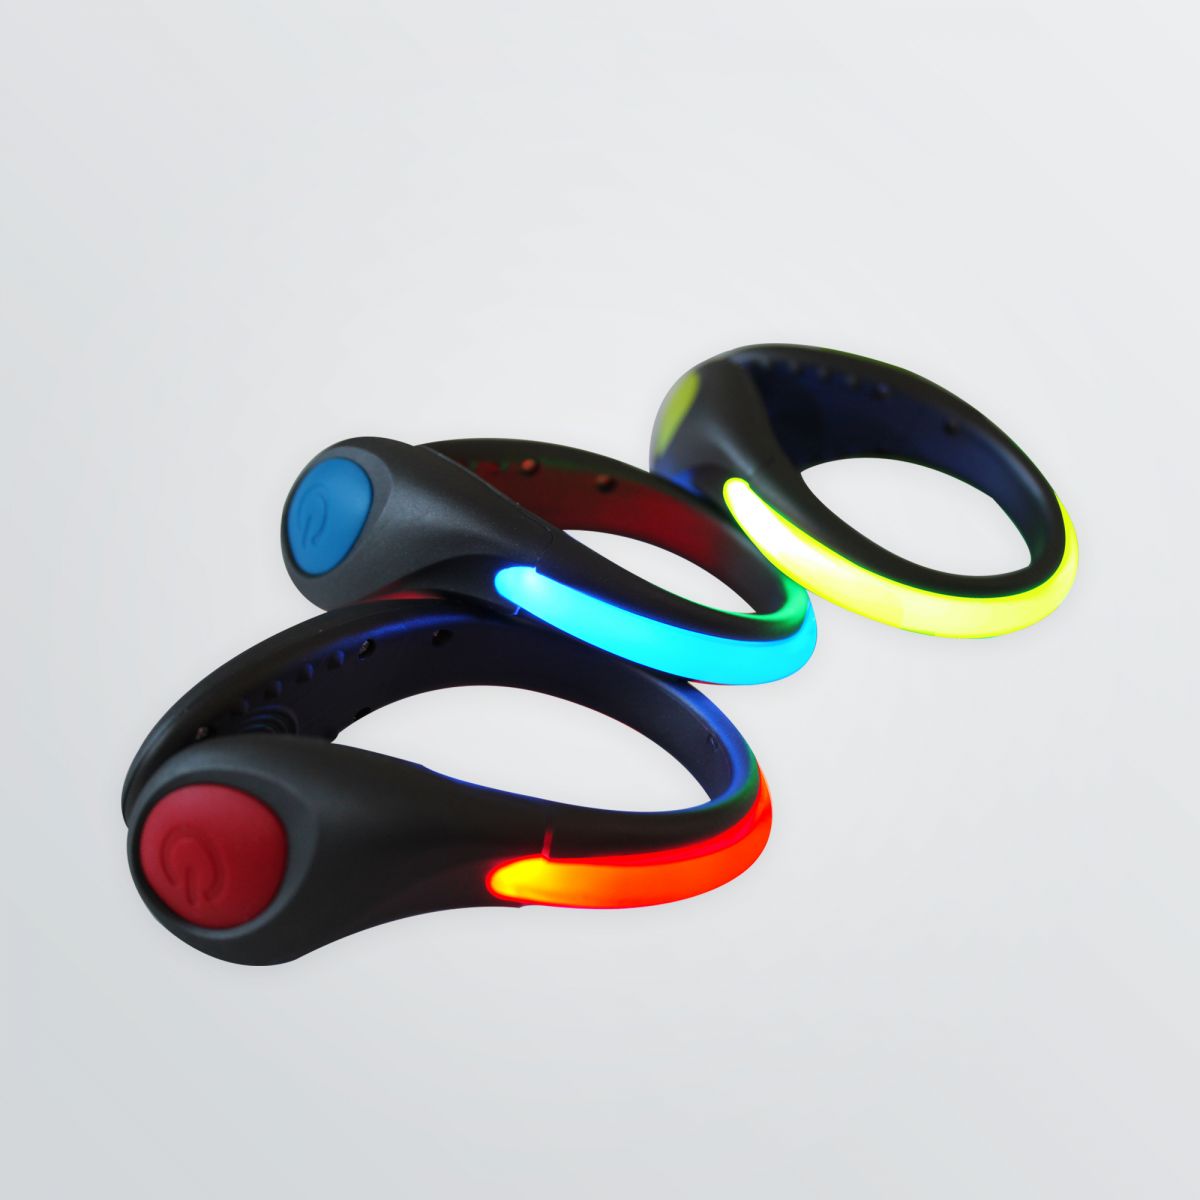 LED-Schuhclips mit Leuchteffekt in den Farben gelb rot und blau